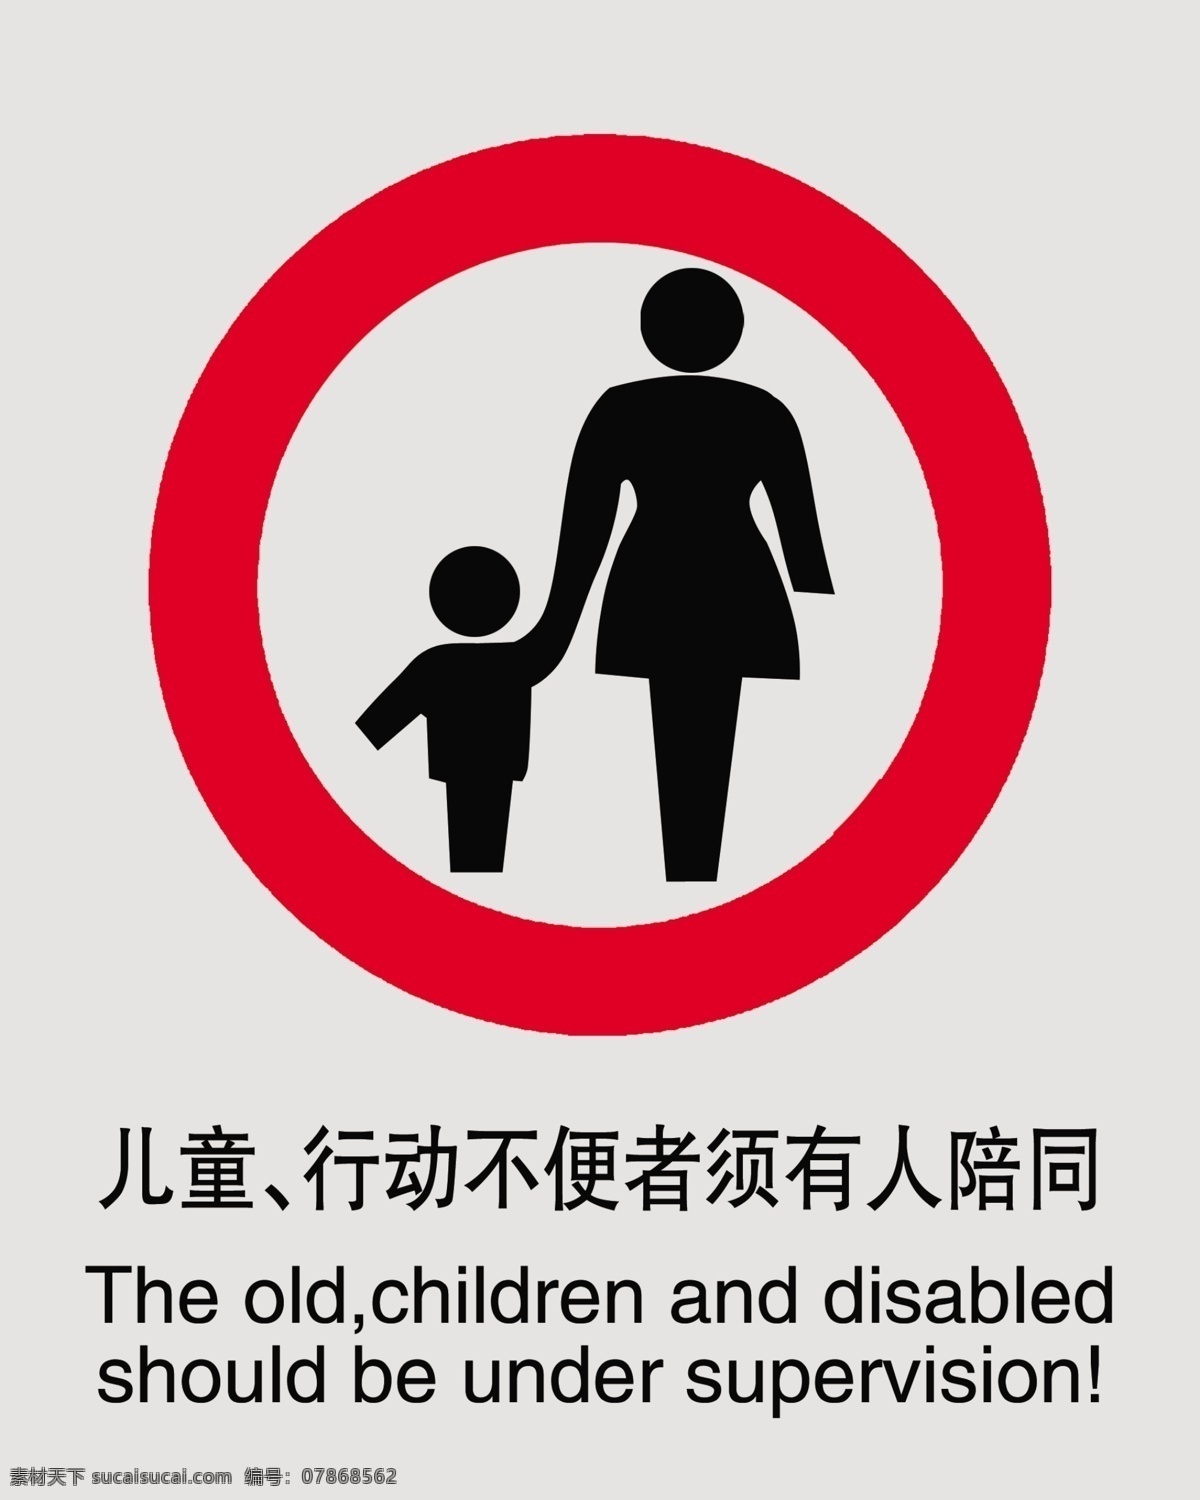 禁止标志 儿童 行动 不便 须 有人 陪同 酒店 电梯 门 房地产广告 广告设计模板 源文件